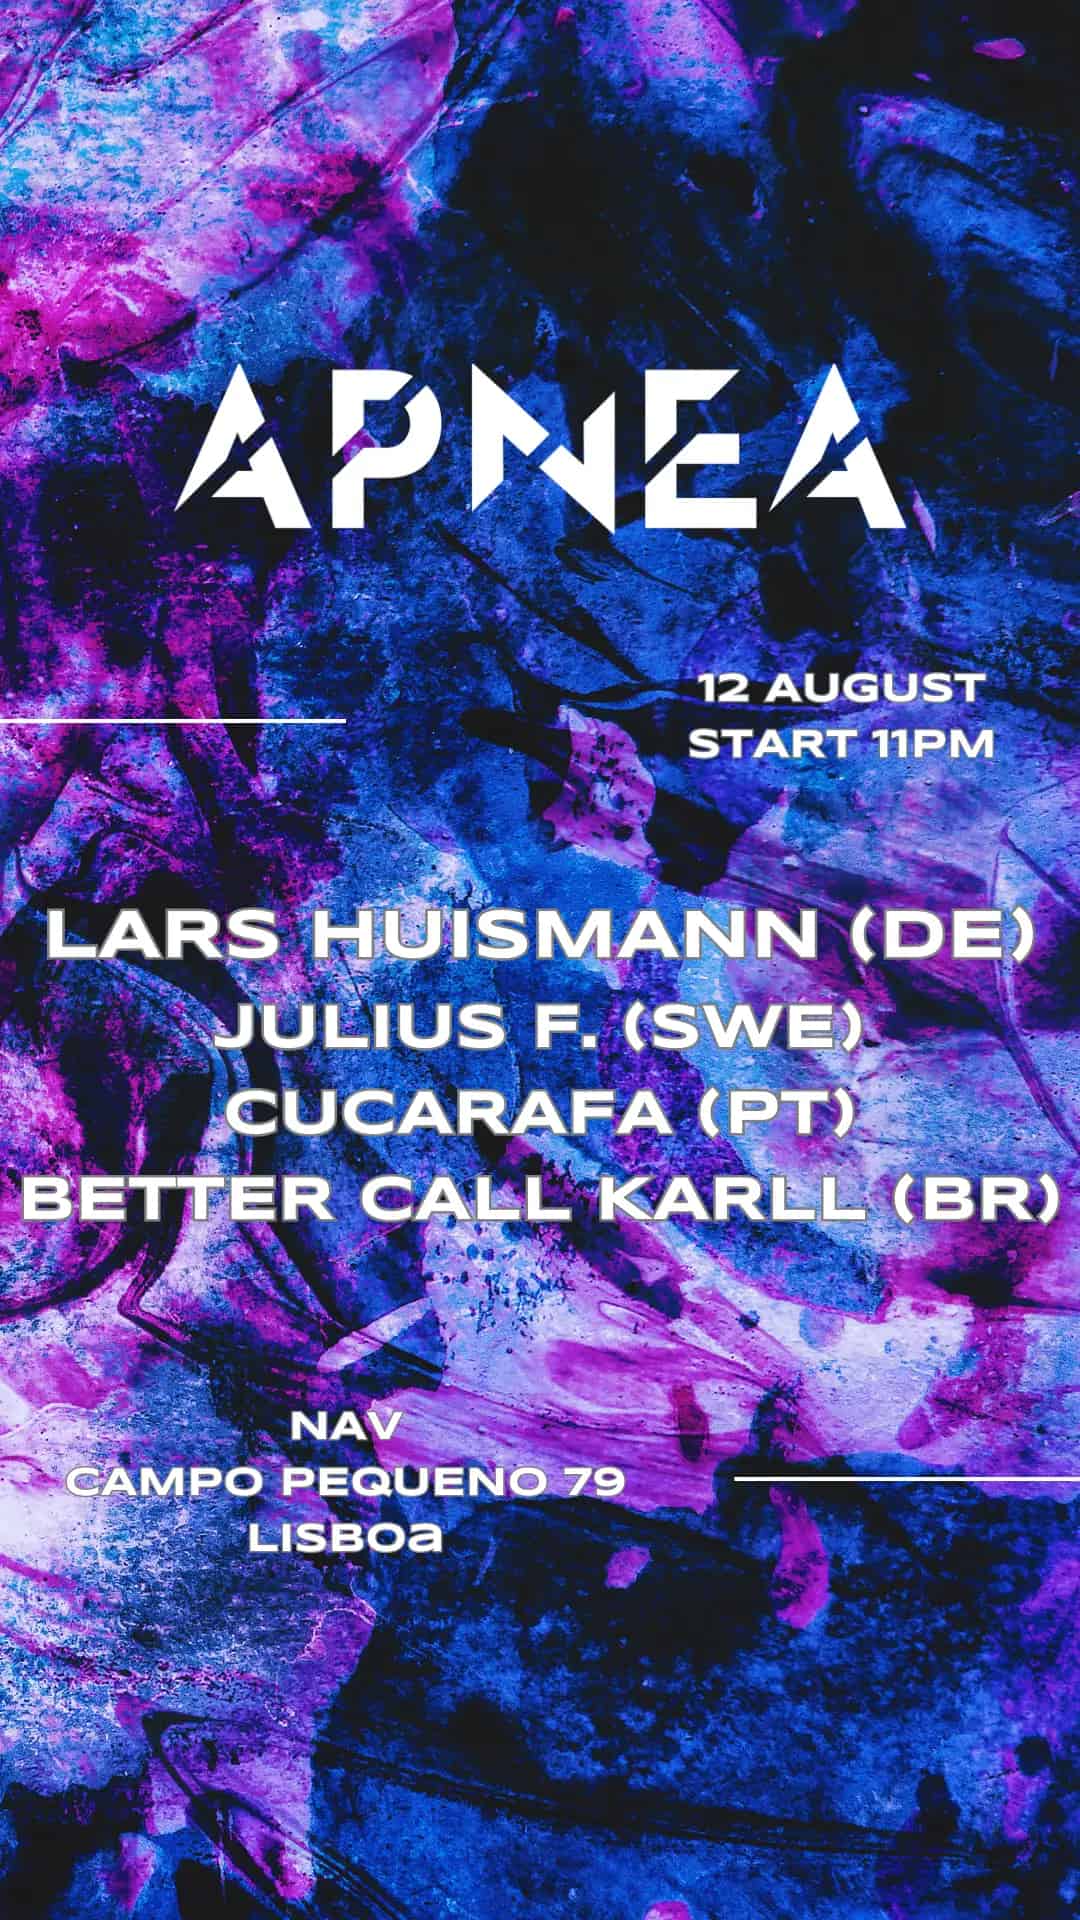 Apnea - with Lars Huismann (DE) & Cucurafa (PT)